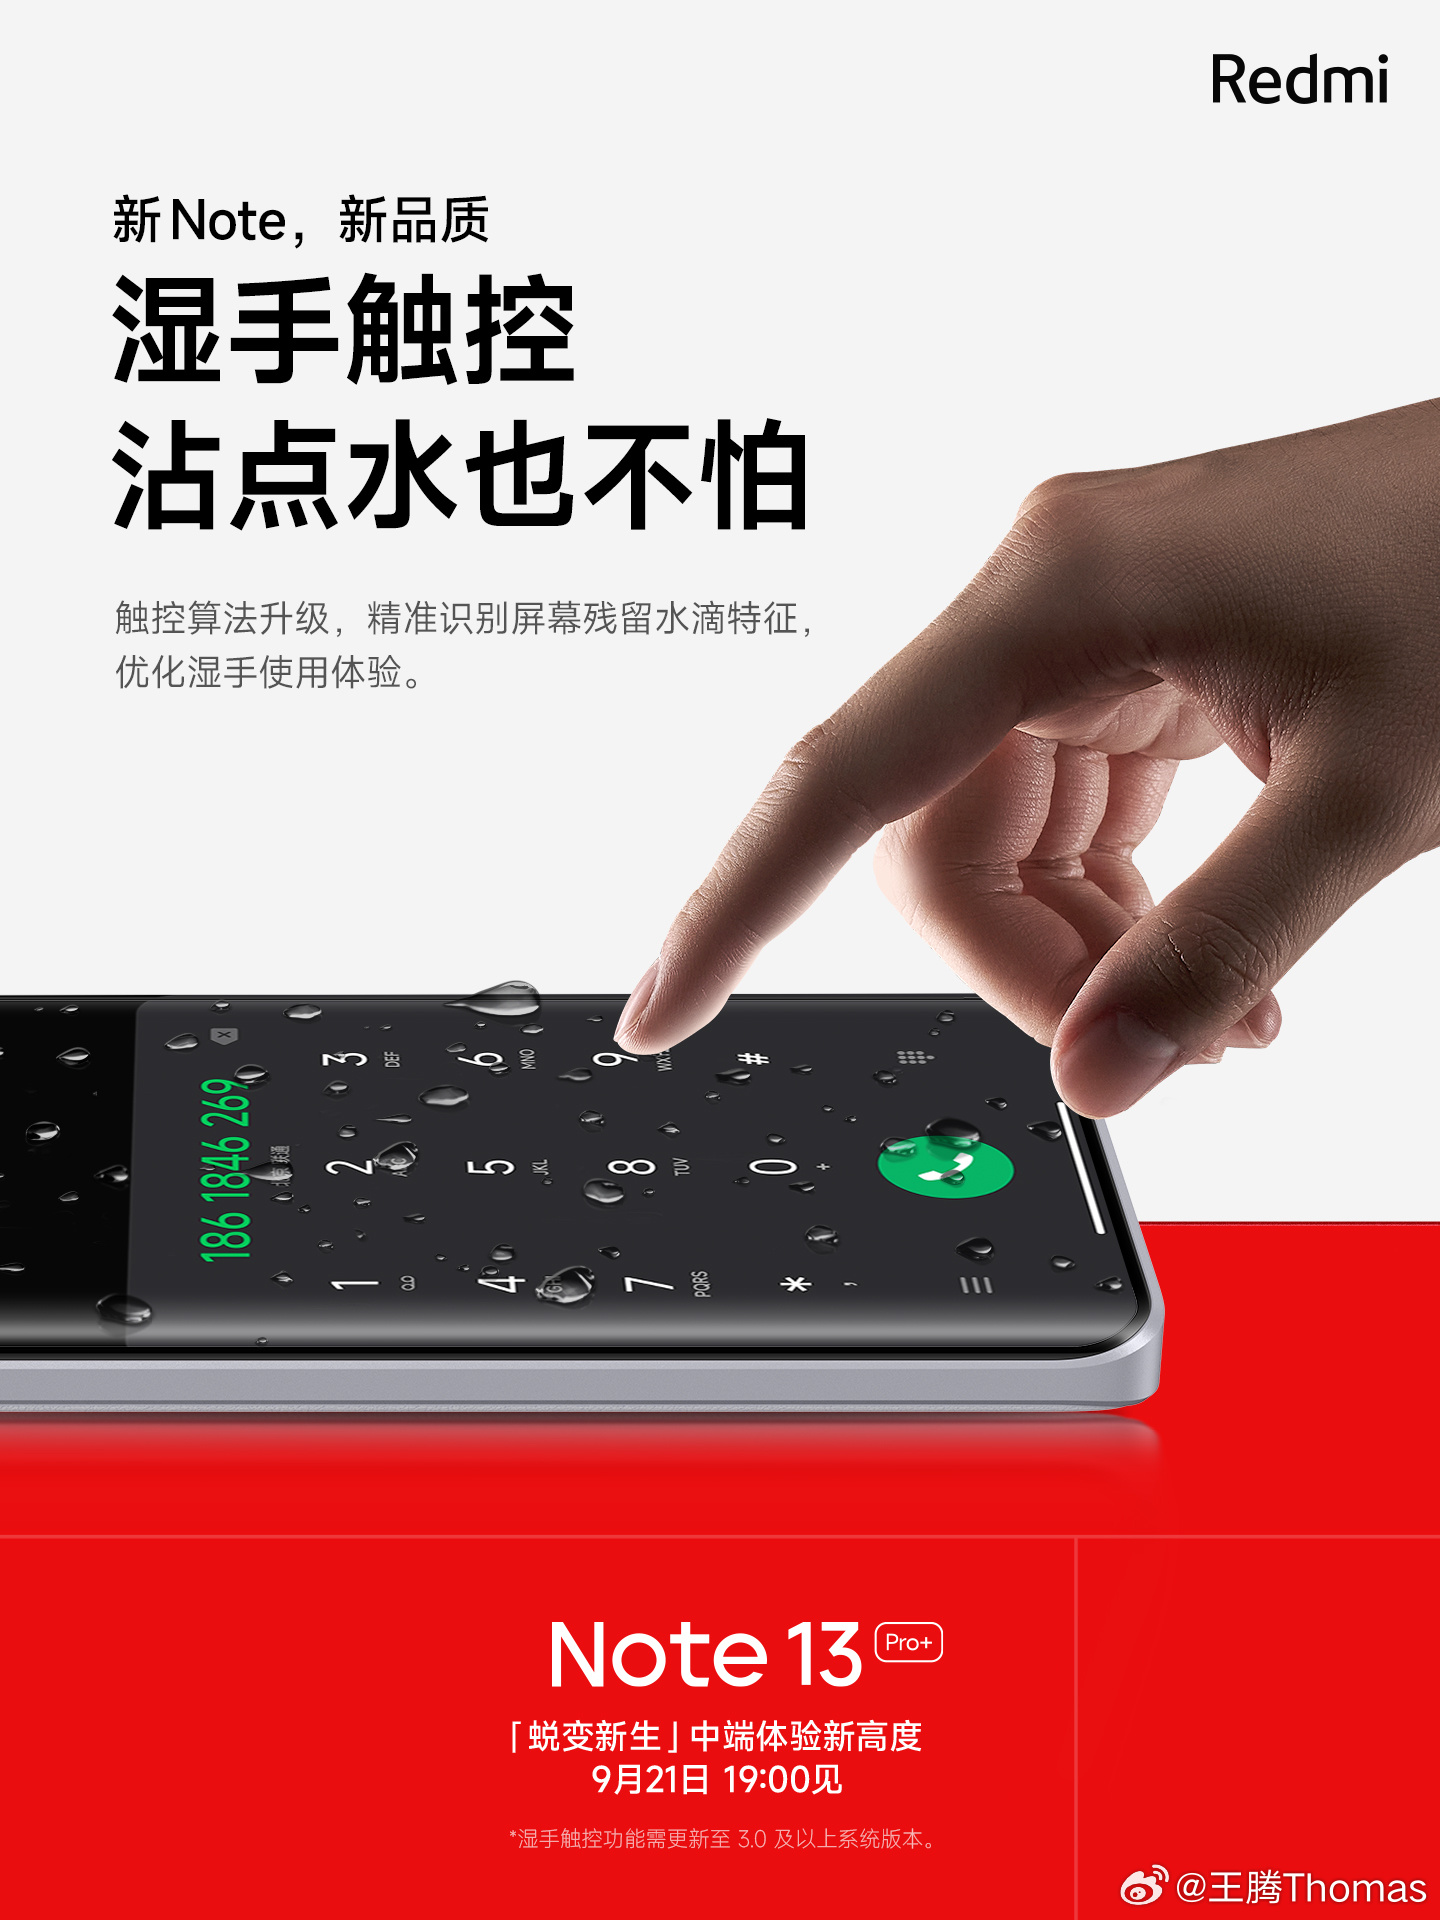 Redmi Note 13 Pro Plus Rain Water Touch